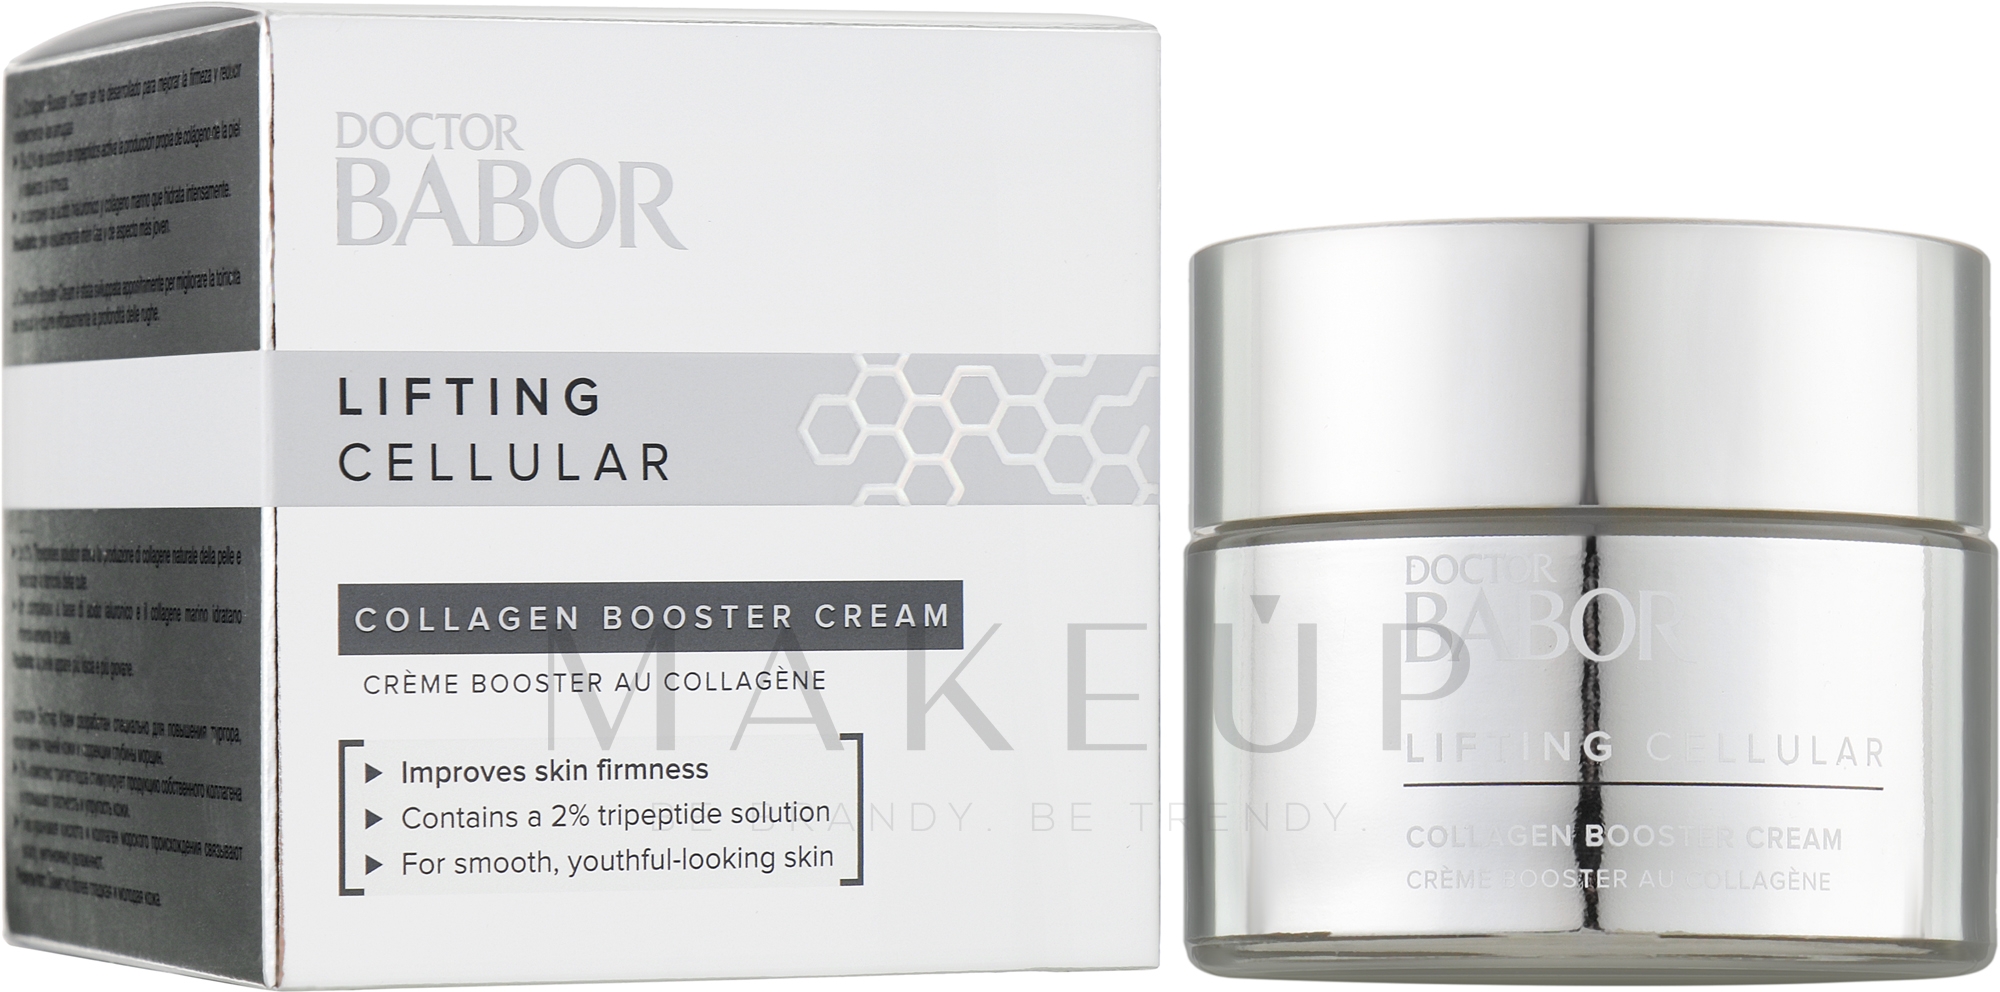 Booster-Creme für das Gesicht - Babor Doctor Babor Lifting Cellular Collagen Booster Cream — Bild 50 ml